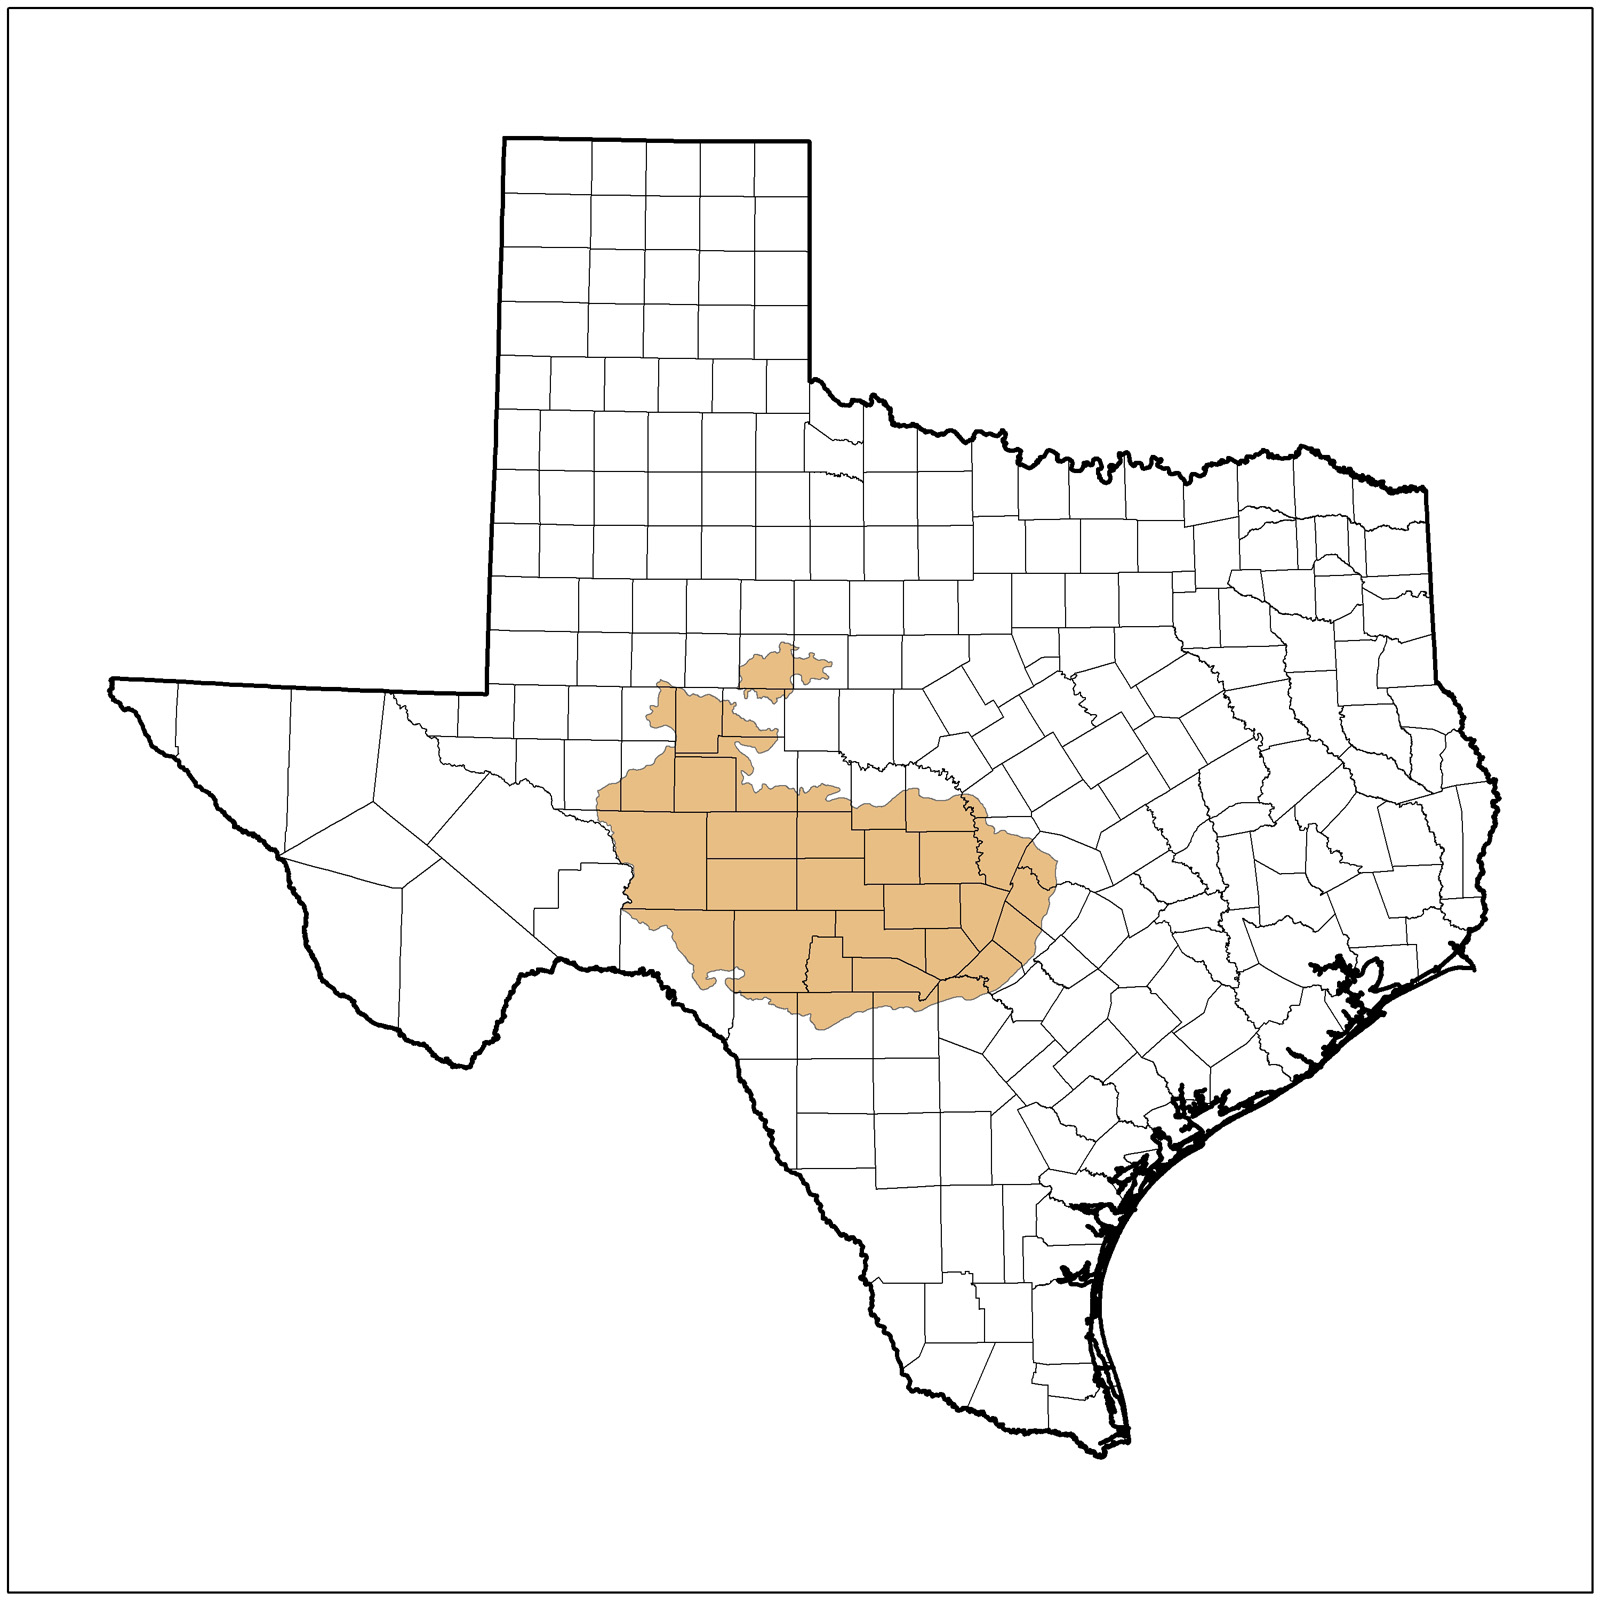 Edwards Plateau Ecoregion of Texas